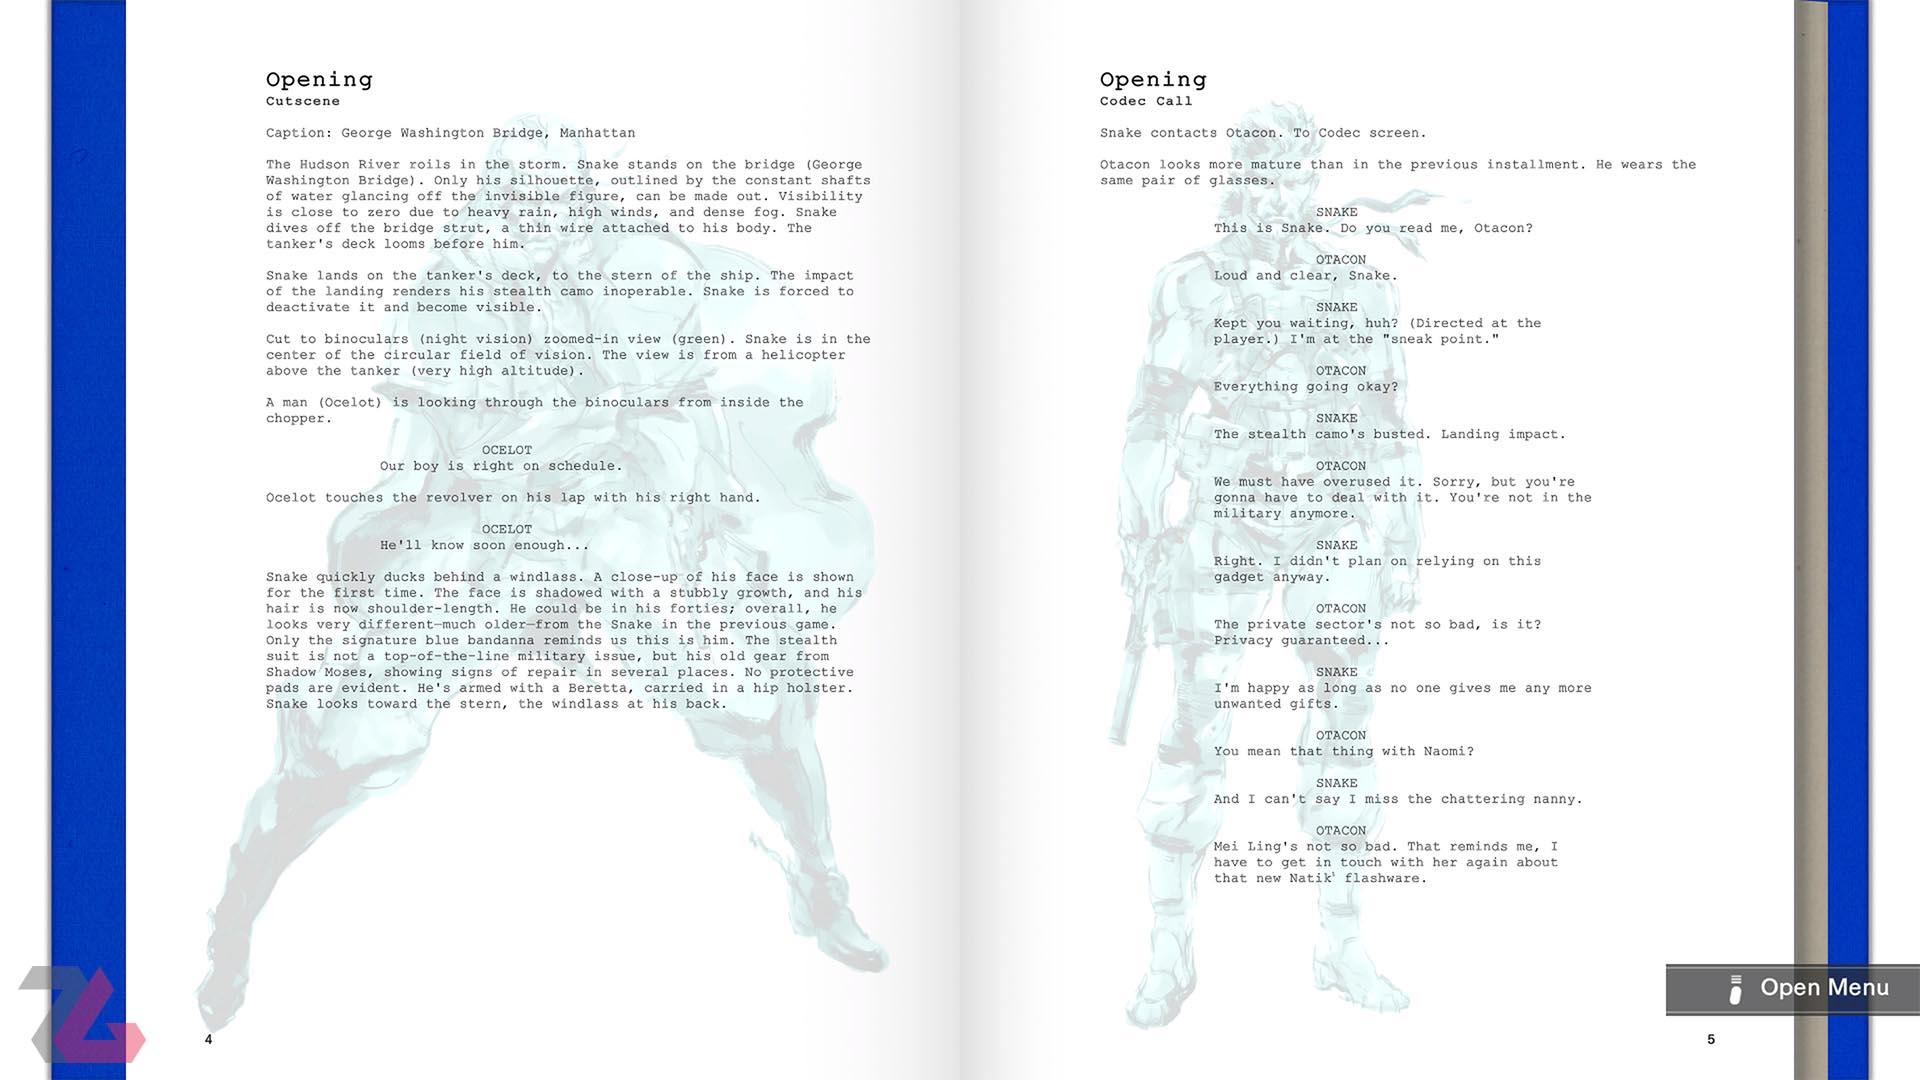 بخش Screenplay بازی متال گیر سالید در Metal Gear Solid: Master Collection